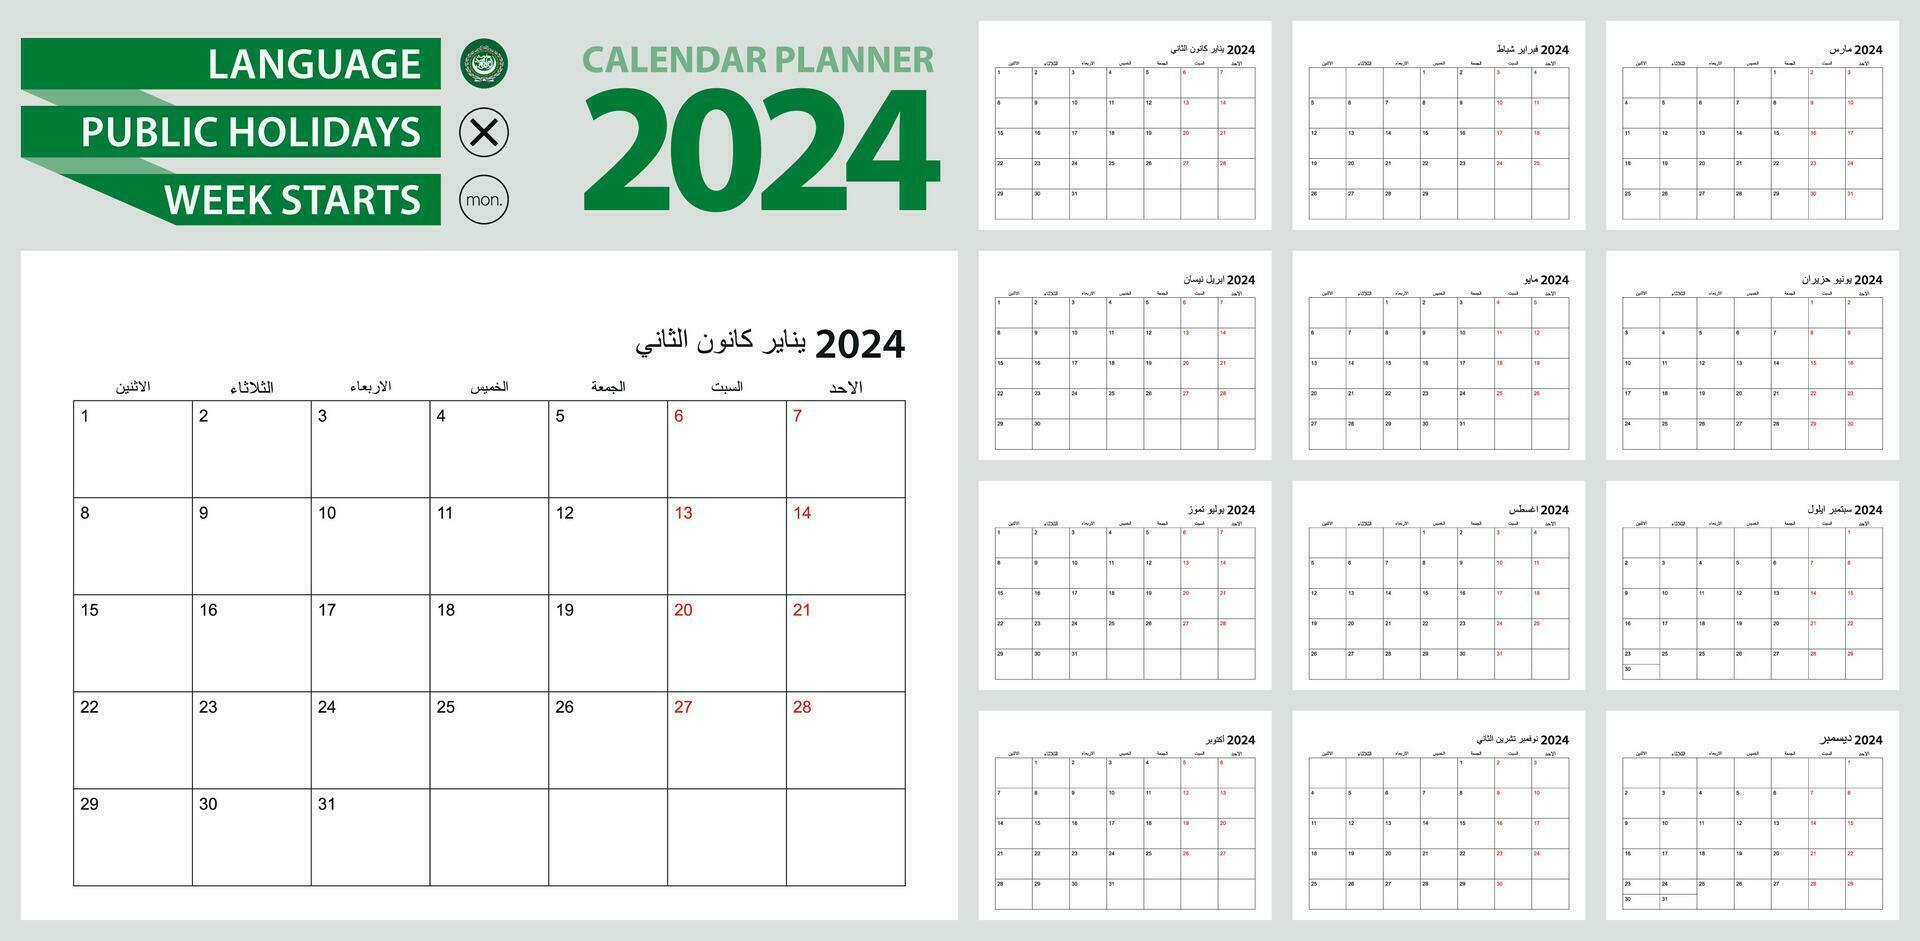 arabicum kalender planerare för 2024. arabicum språk, vecka börjar från måndag. vektor